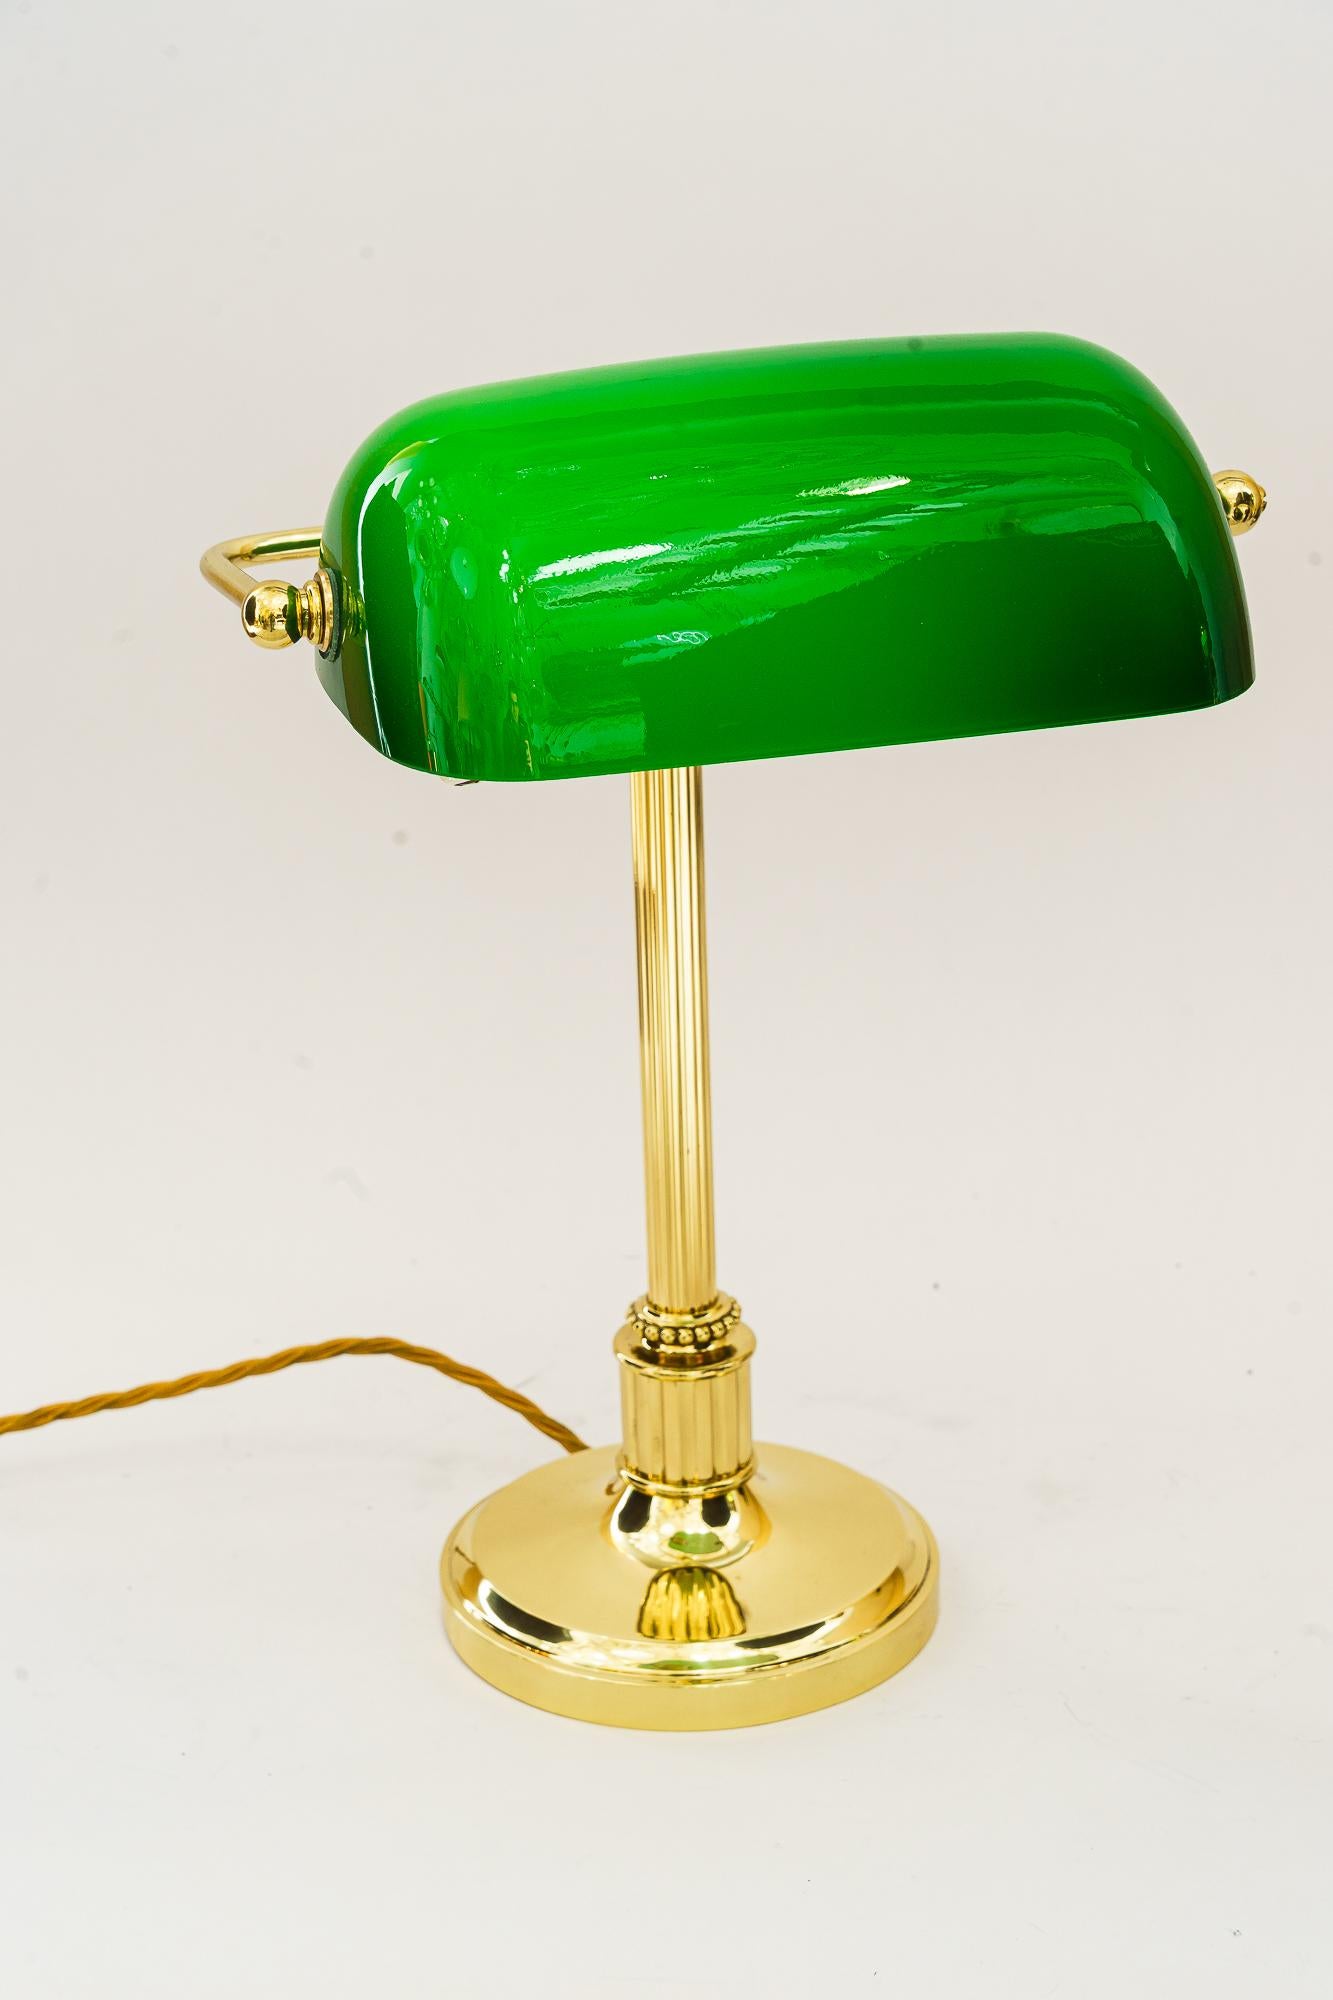 Art Deco Bankerlampe mit grünem Glasschirm, Wien, um 1920er Jahre
Messing poliert und einbrennlackiert.
Original Glasschirm.